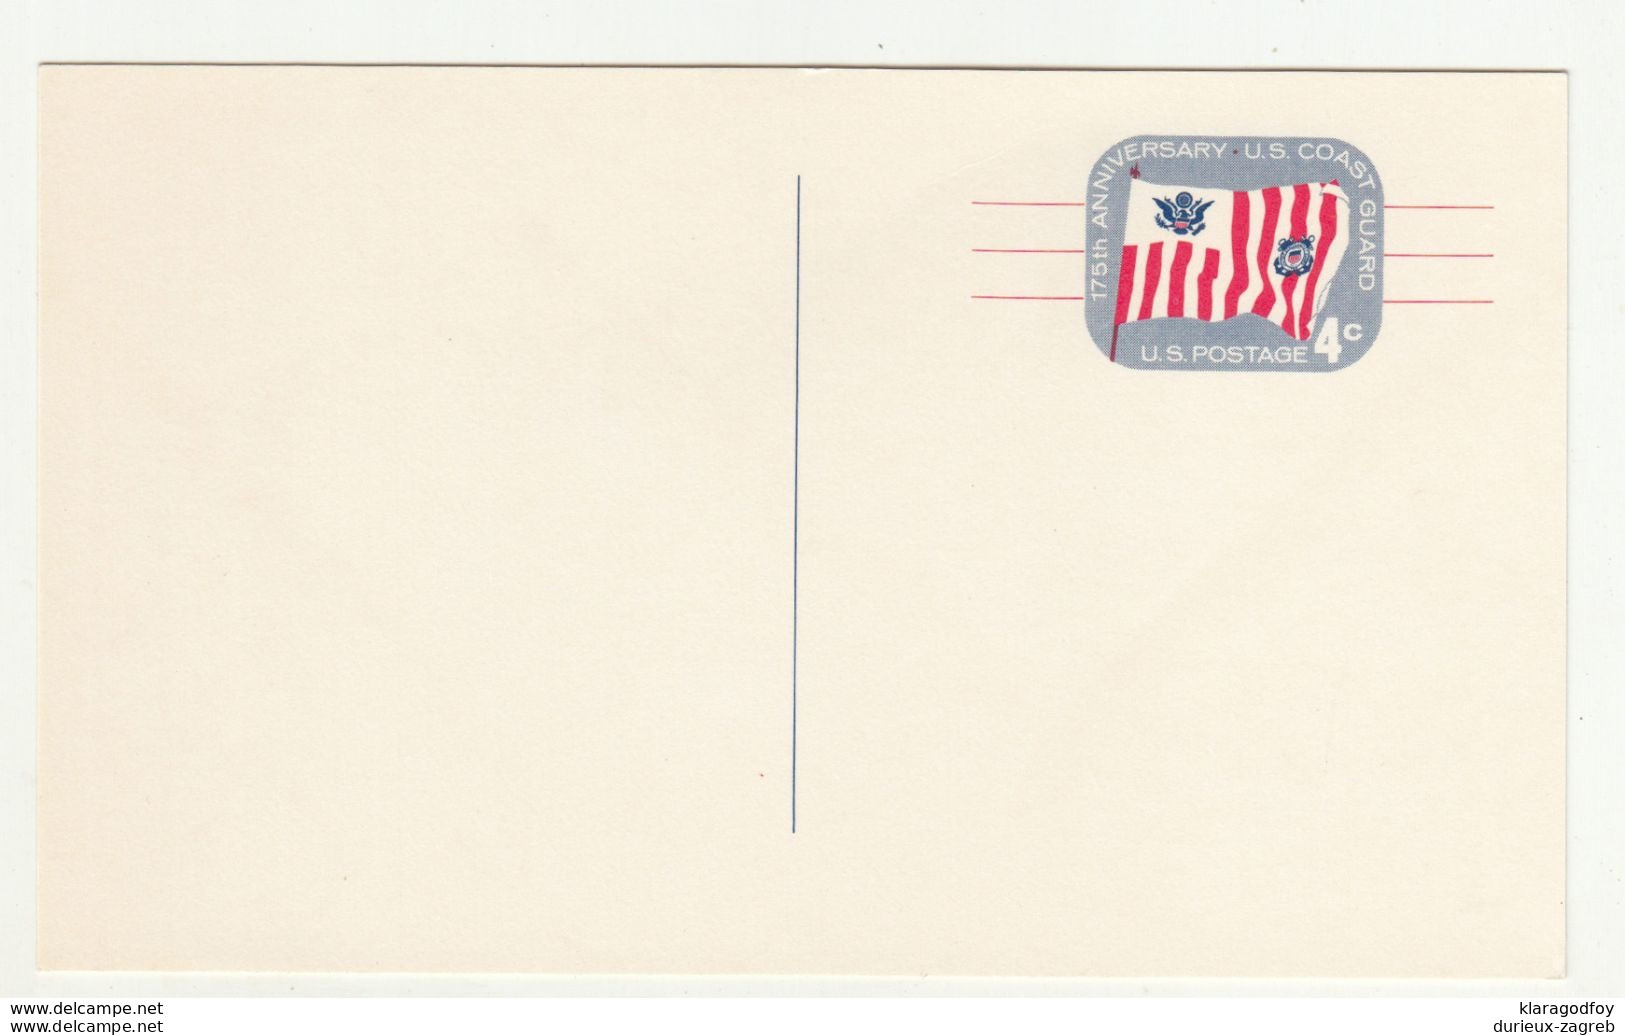 US, 175th Anniversary US Coast Guard Postal Stationery Postcard Unused B200610 - 1961-80